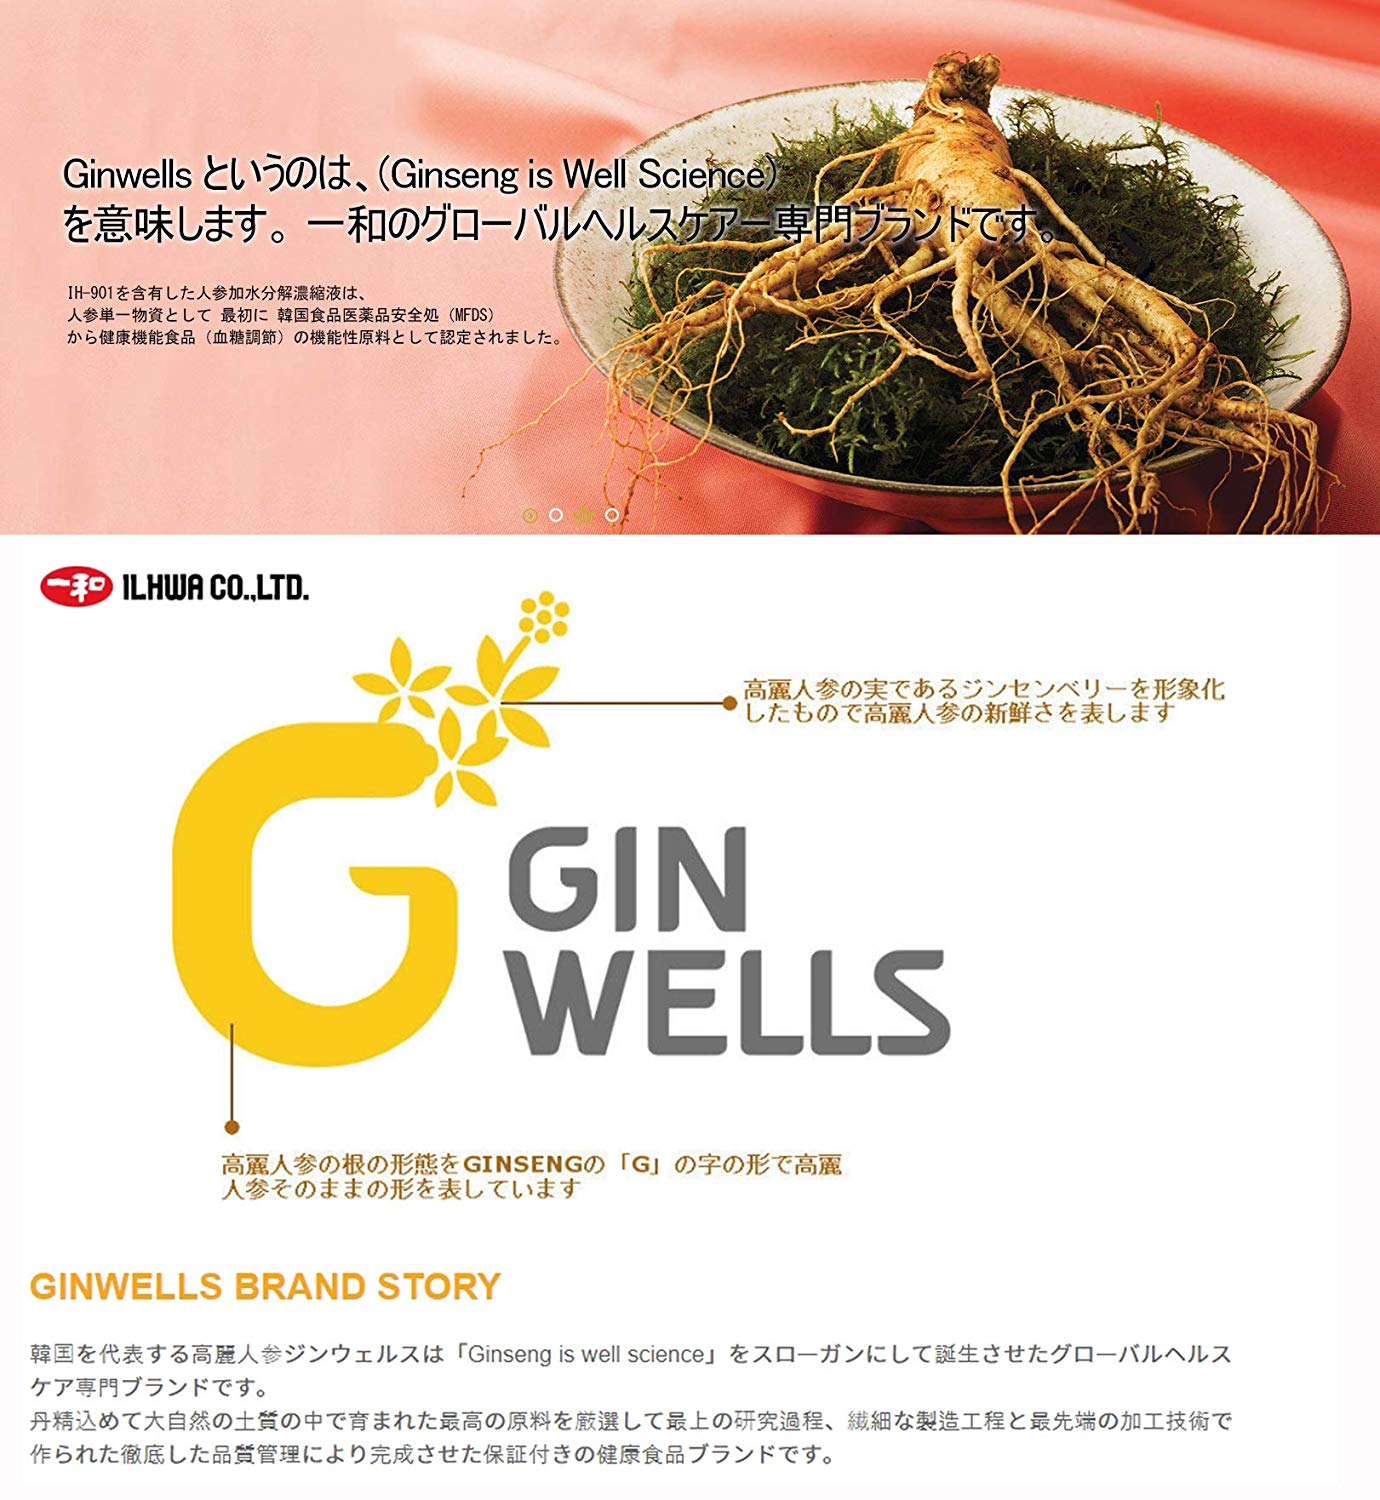 Ginwells PREMIUM 6 Years Korean Red Ginseng Extract 100g Health Foods